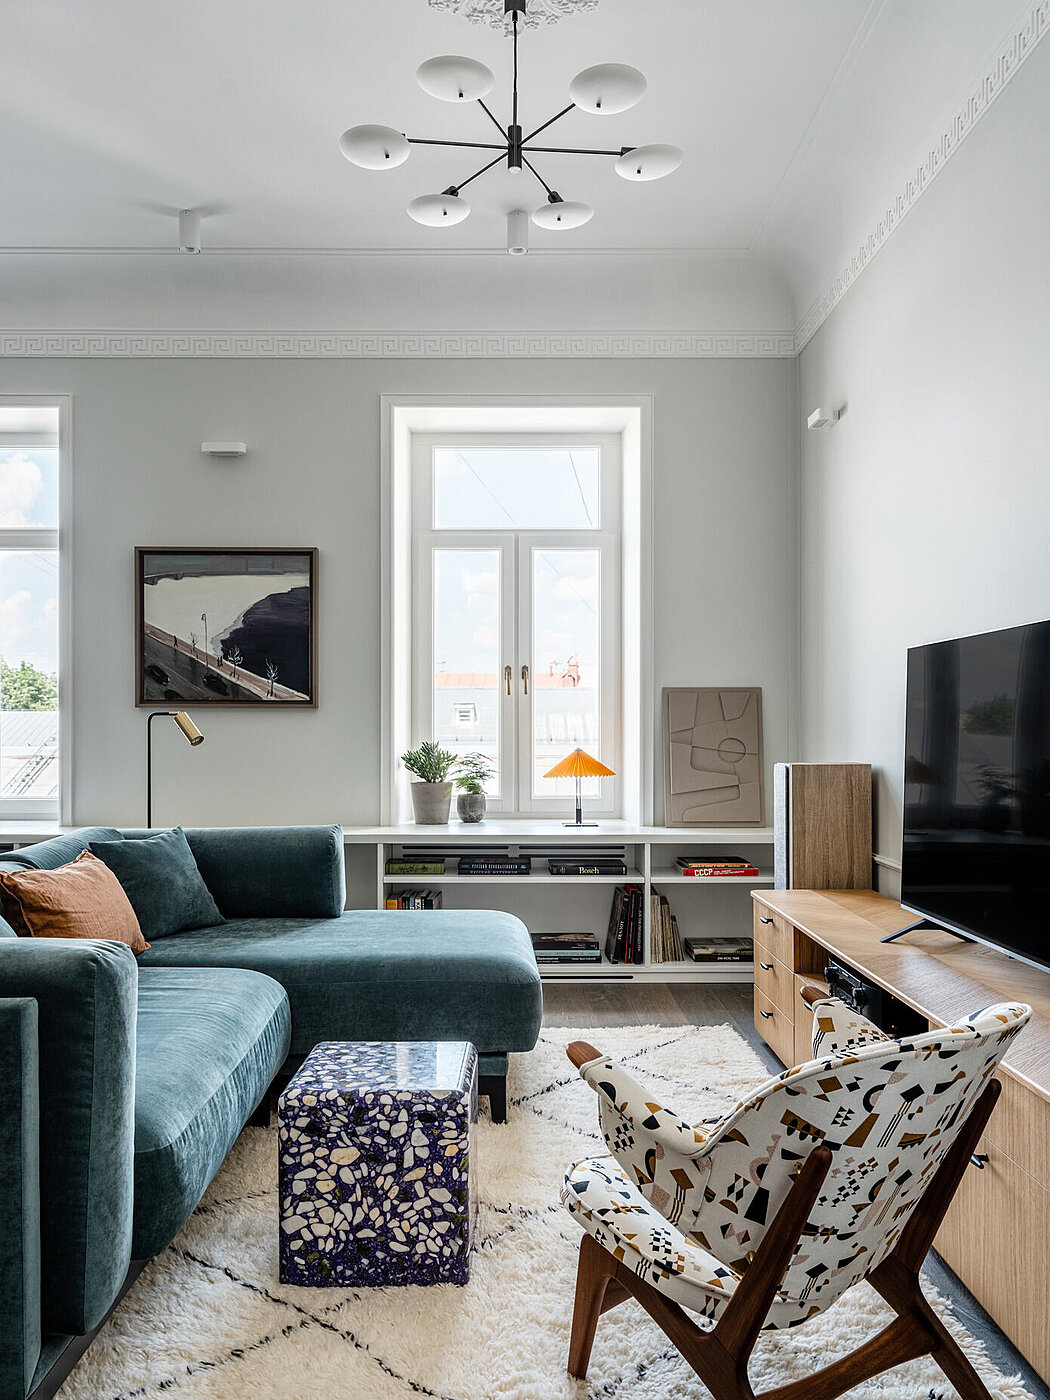 Ostozhenka: A Timelessly Elegant Apartment - 1